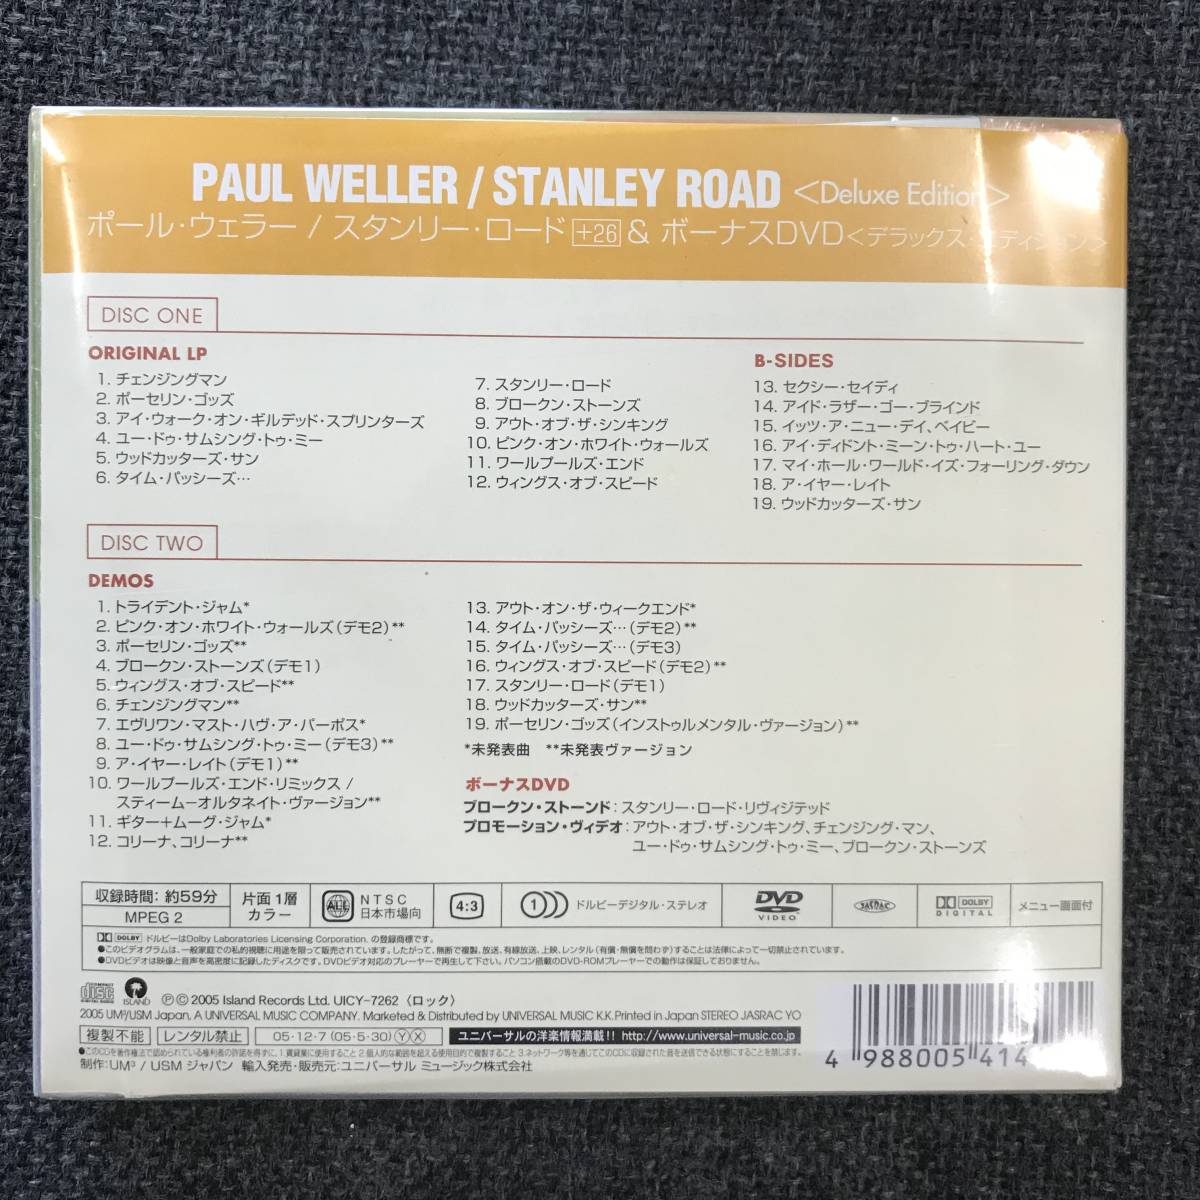  новый товар нераспечатанный CD* paul (pole) *wela- Stanley * load +26&DVD(DVD есть ).,(2005/12/07)/<UICY7262>: